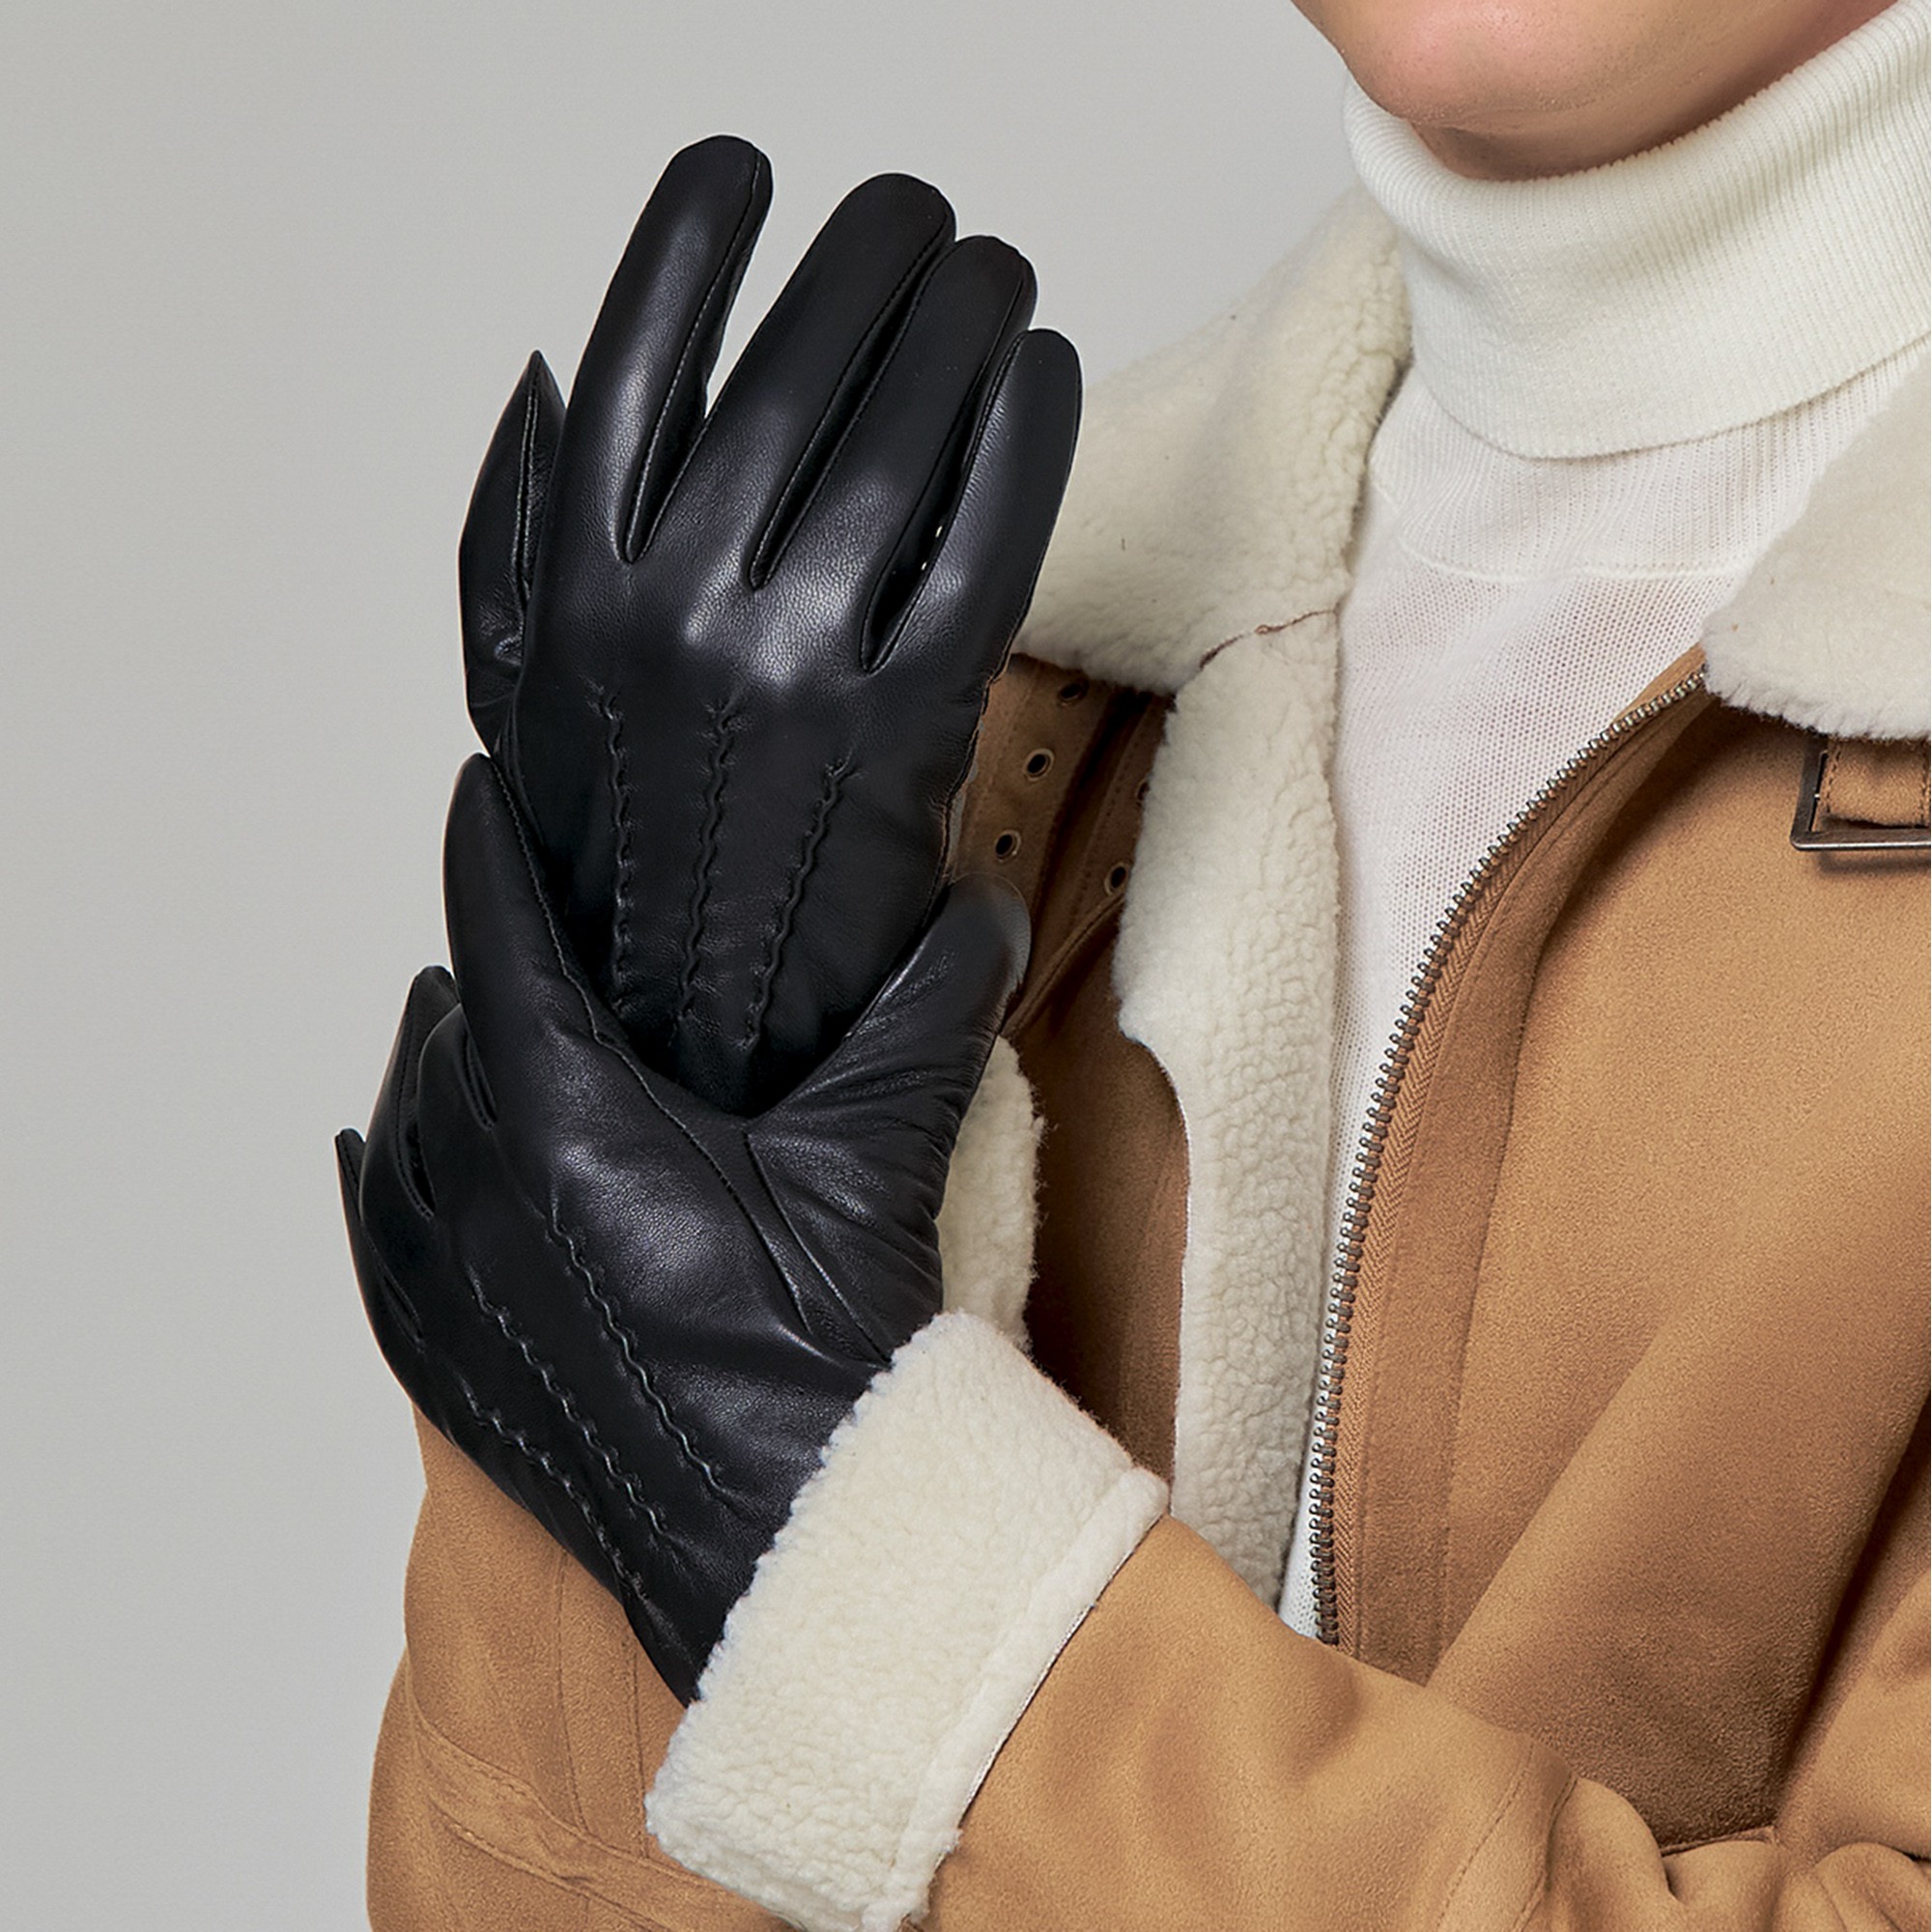 Др.Коффер H760128-236-04 перчатки (8), размер 8, цвет черный - фото 1